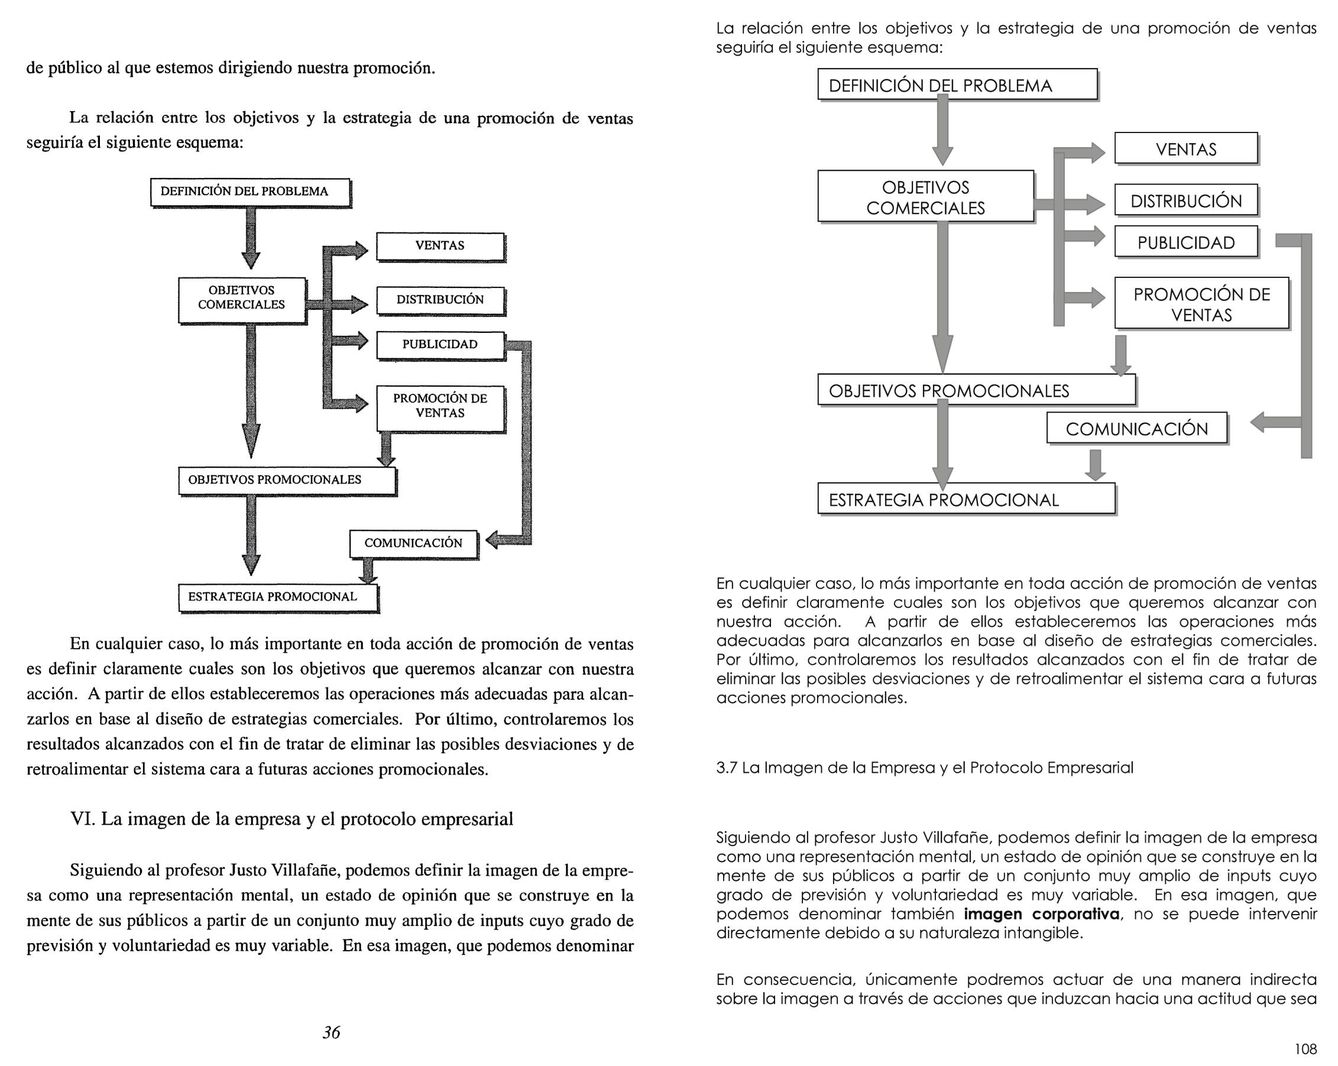 A la izquierda, página del discurso de Javier Maqueda en 2003. A la derecha, página de la tesis de su hija, Maider, en 2012. (Pinche en la imagen para verla a tamaño completo)